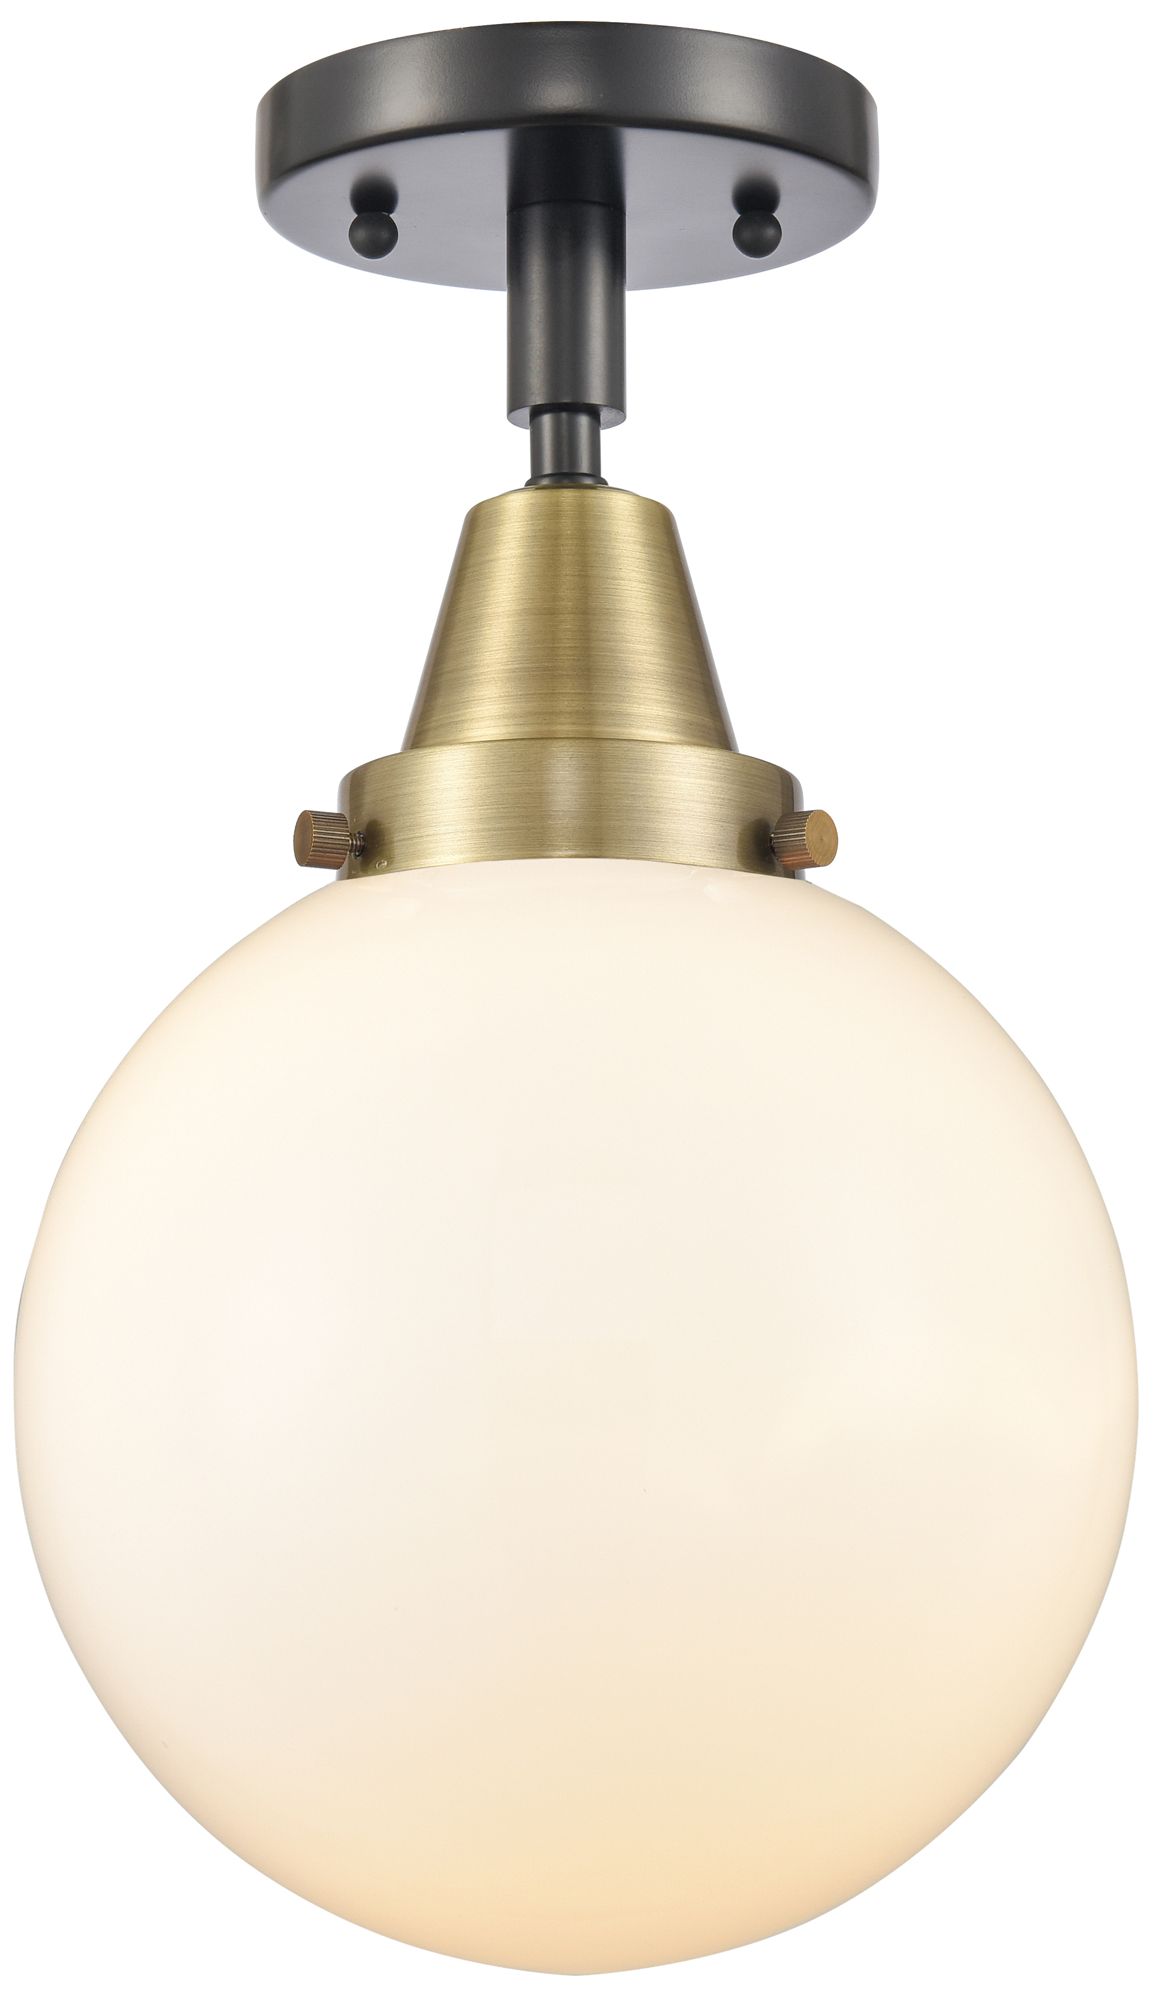 Caden Beacon 8" LED Flush Mount - Black Antique Brass - Matte White Sh